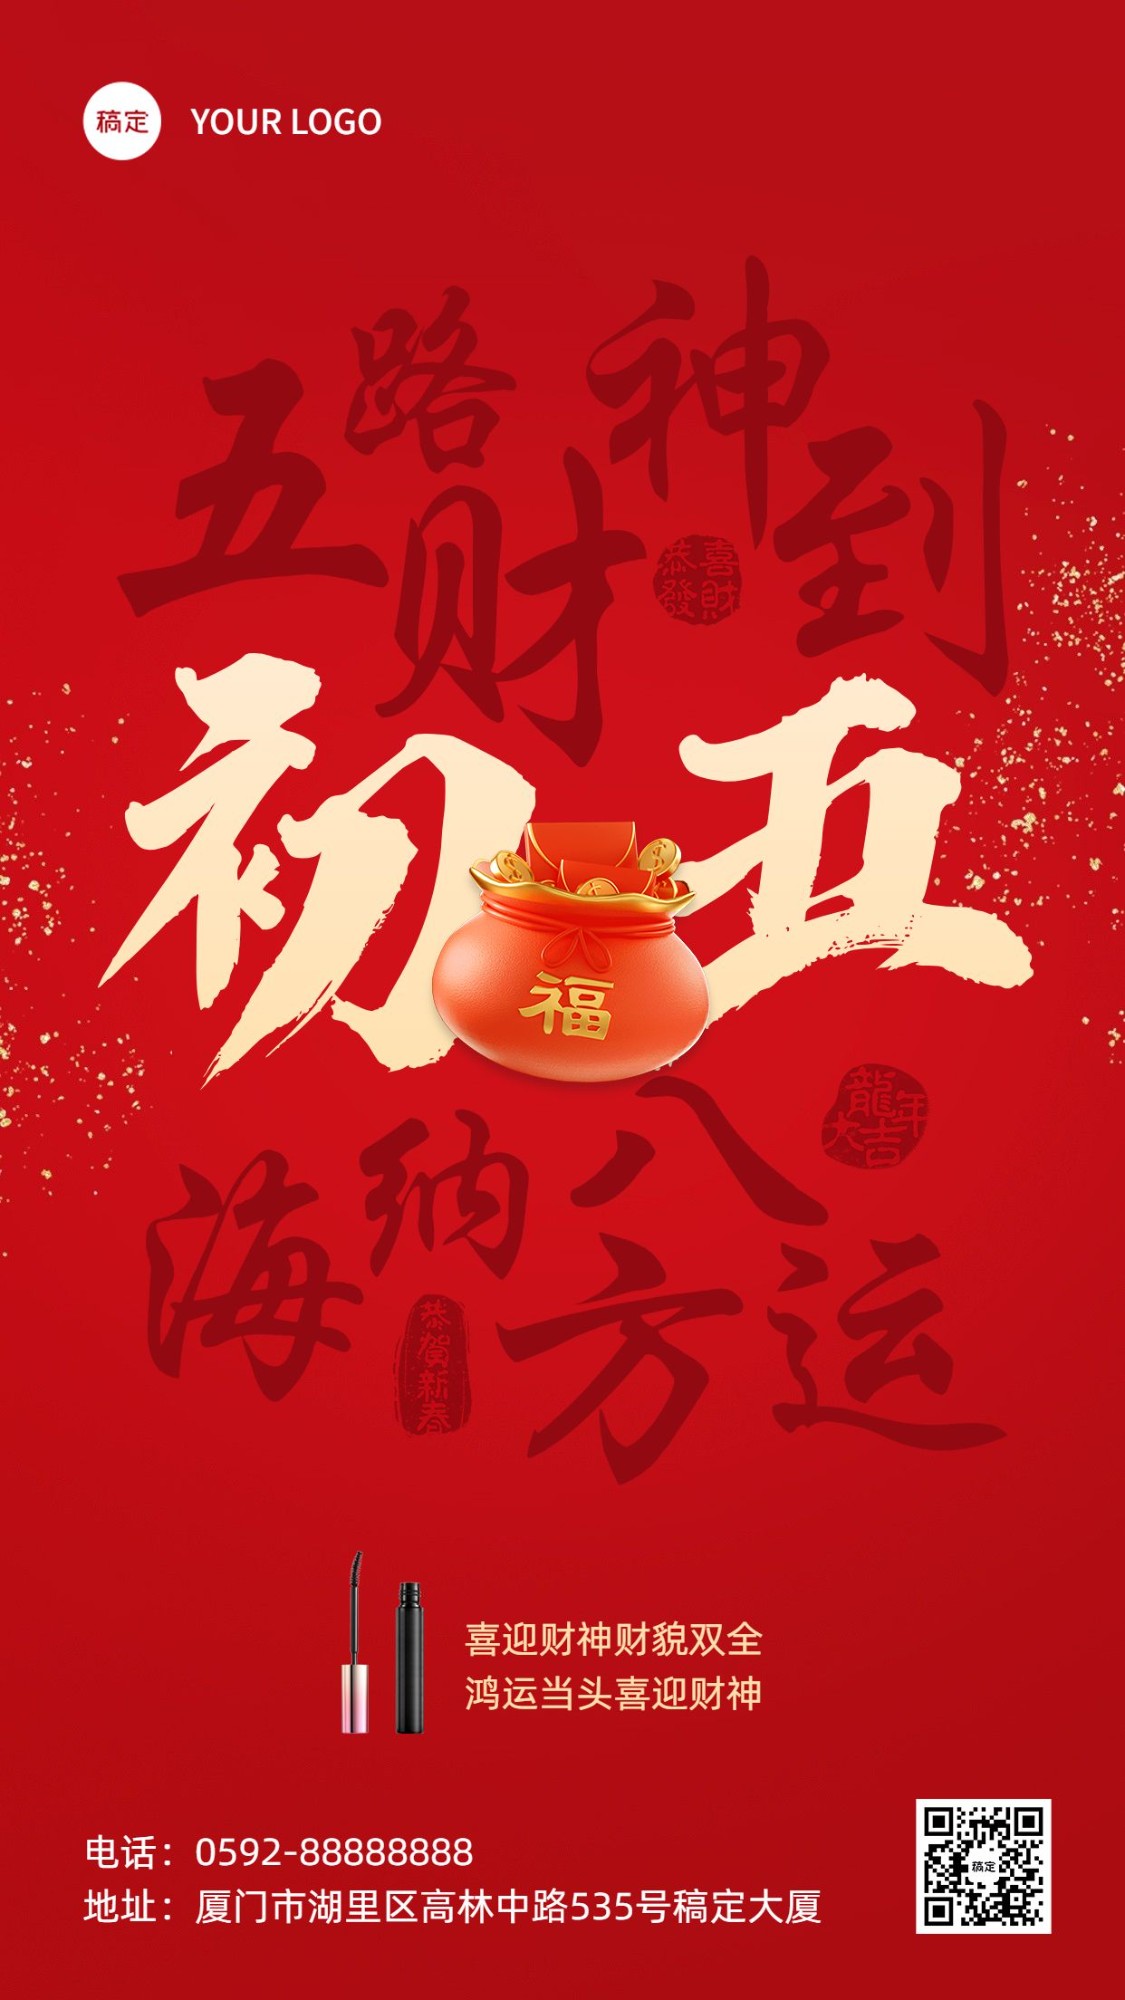 春节初五节日祝福产品展示手机海报套系